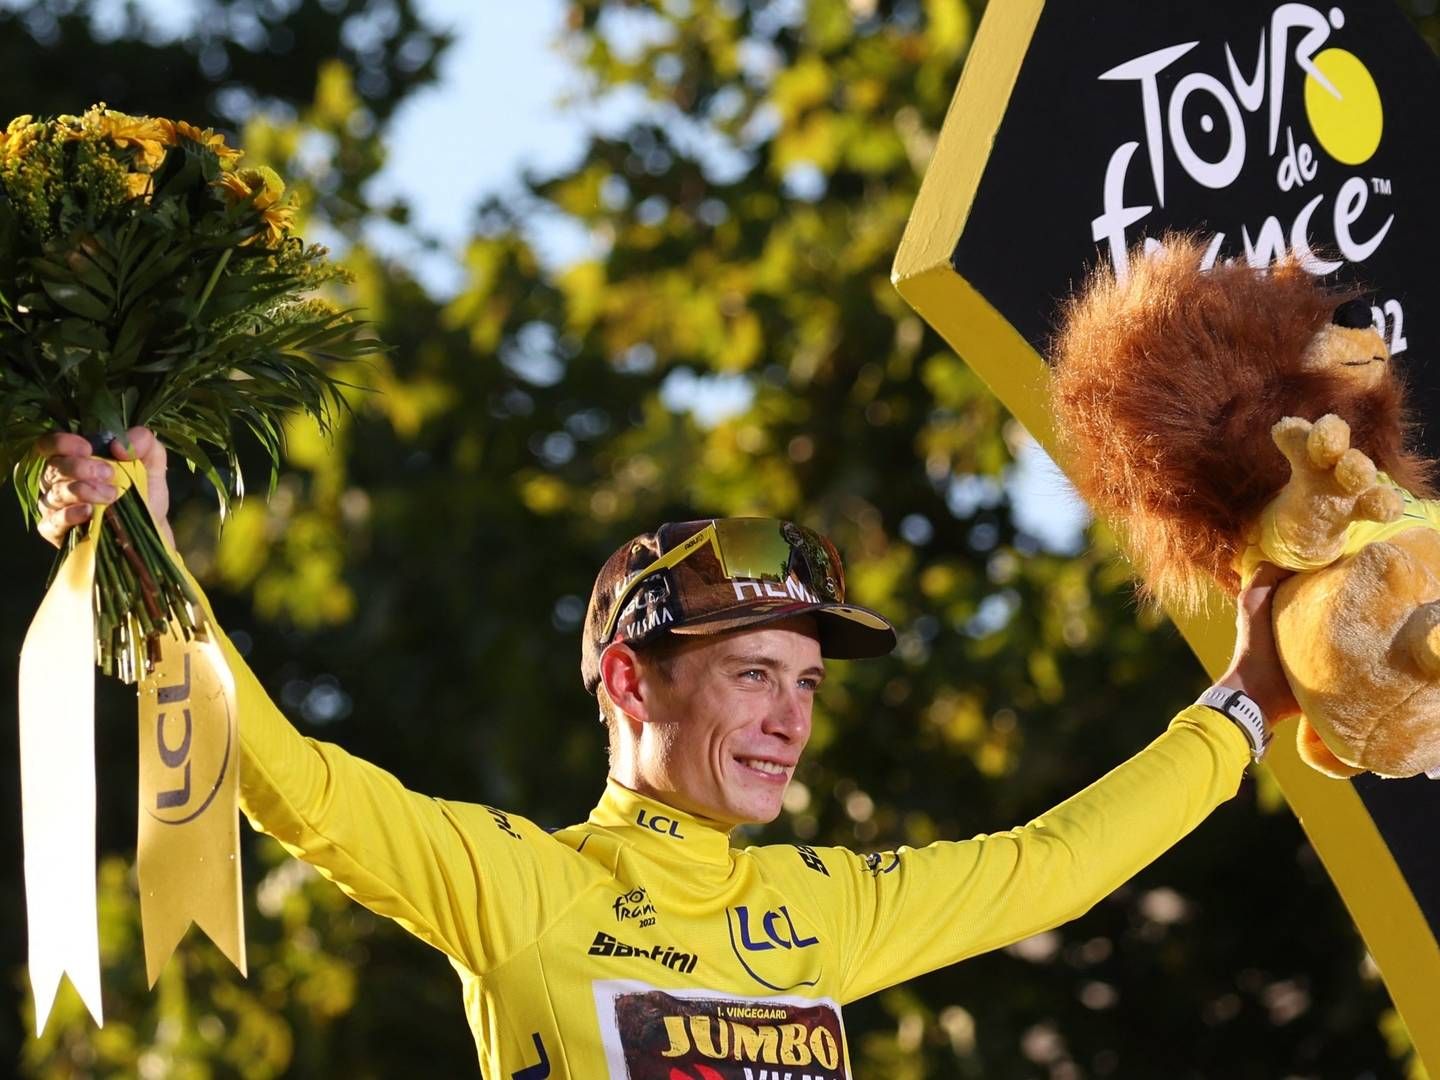 Med sejren i Tour de France er Jonas Vingagaard blevet attraktiv for mange virksomheder, mener sponsorrådgiver. | Foto: Thomas Samson/AFP / AFP